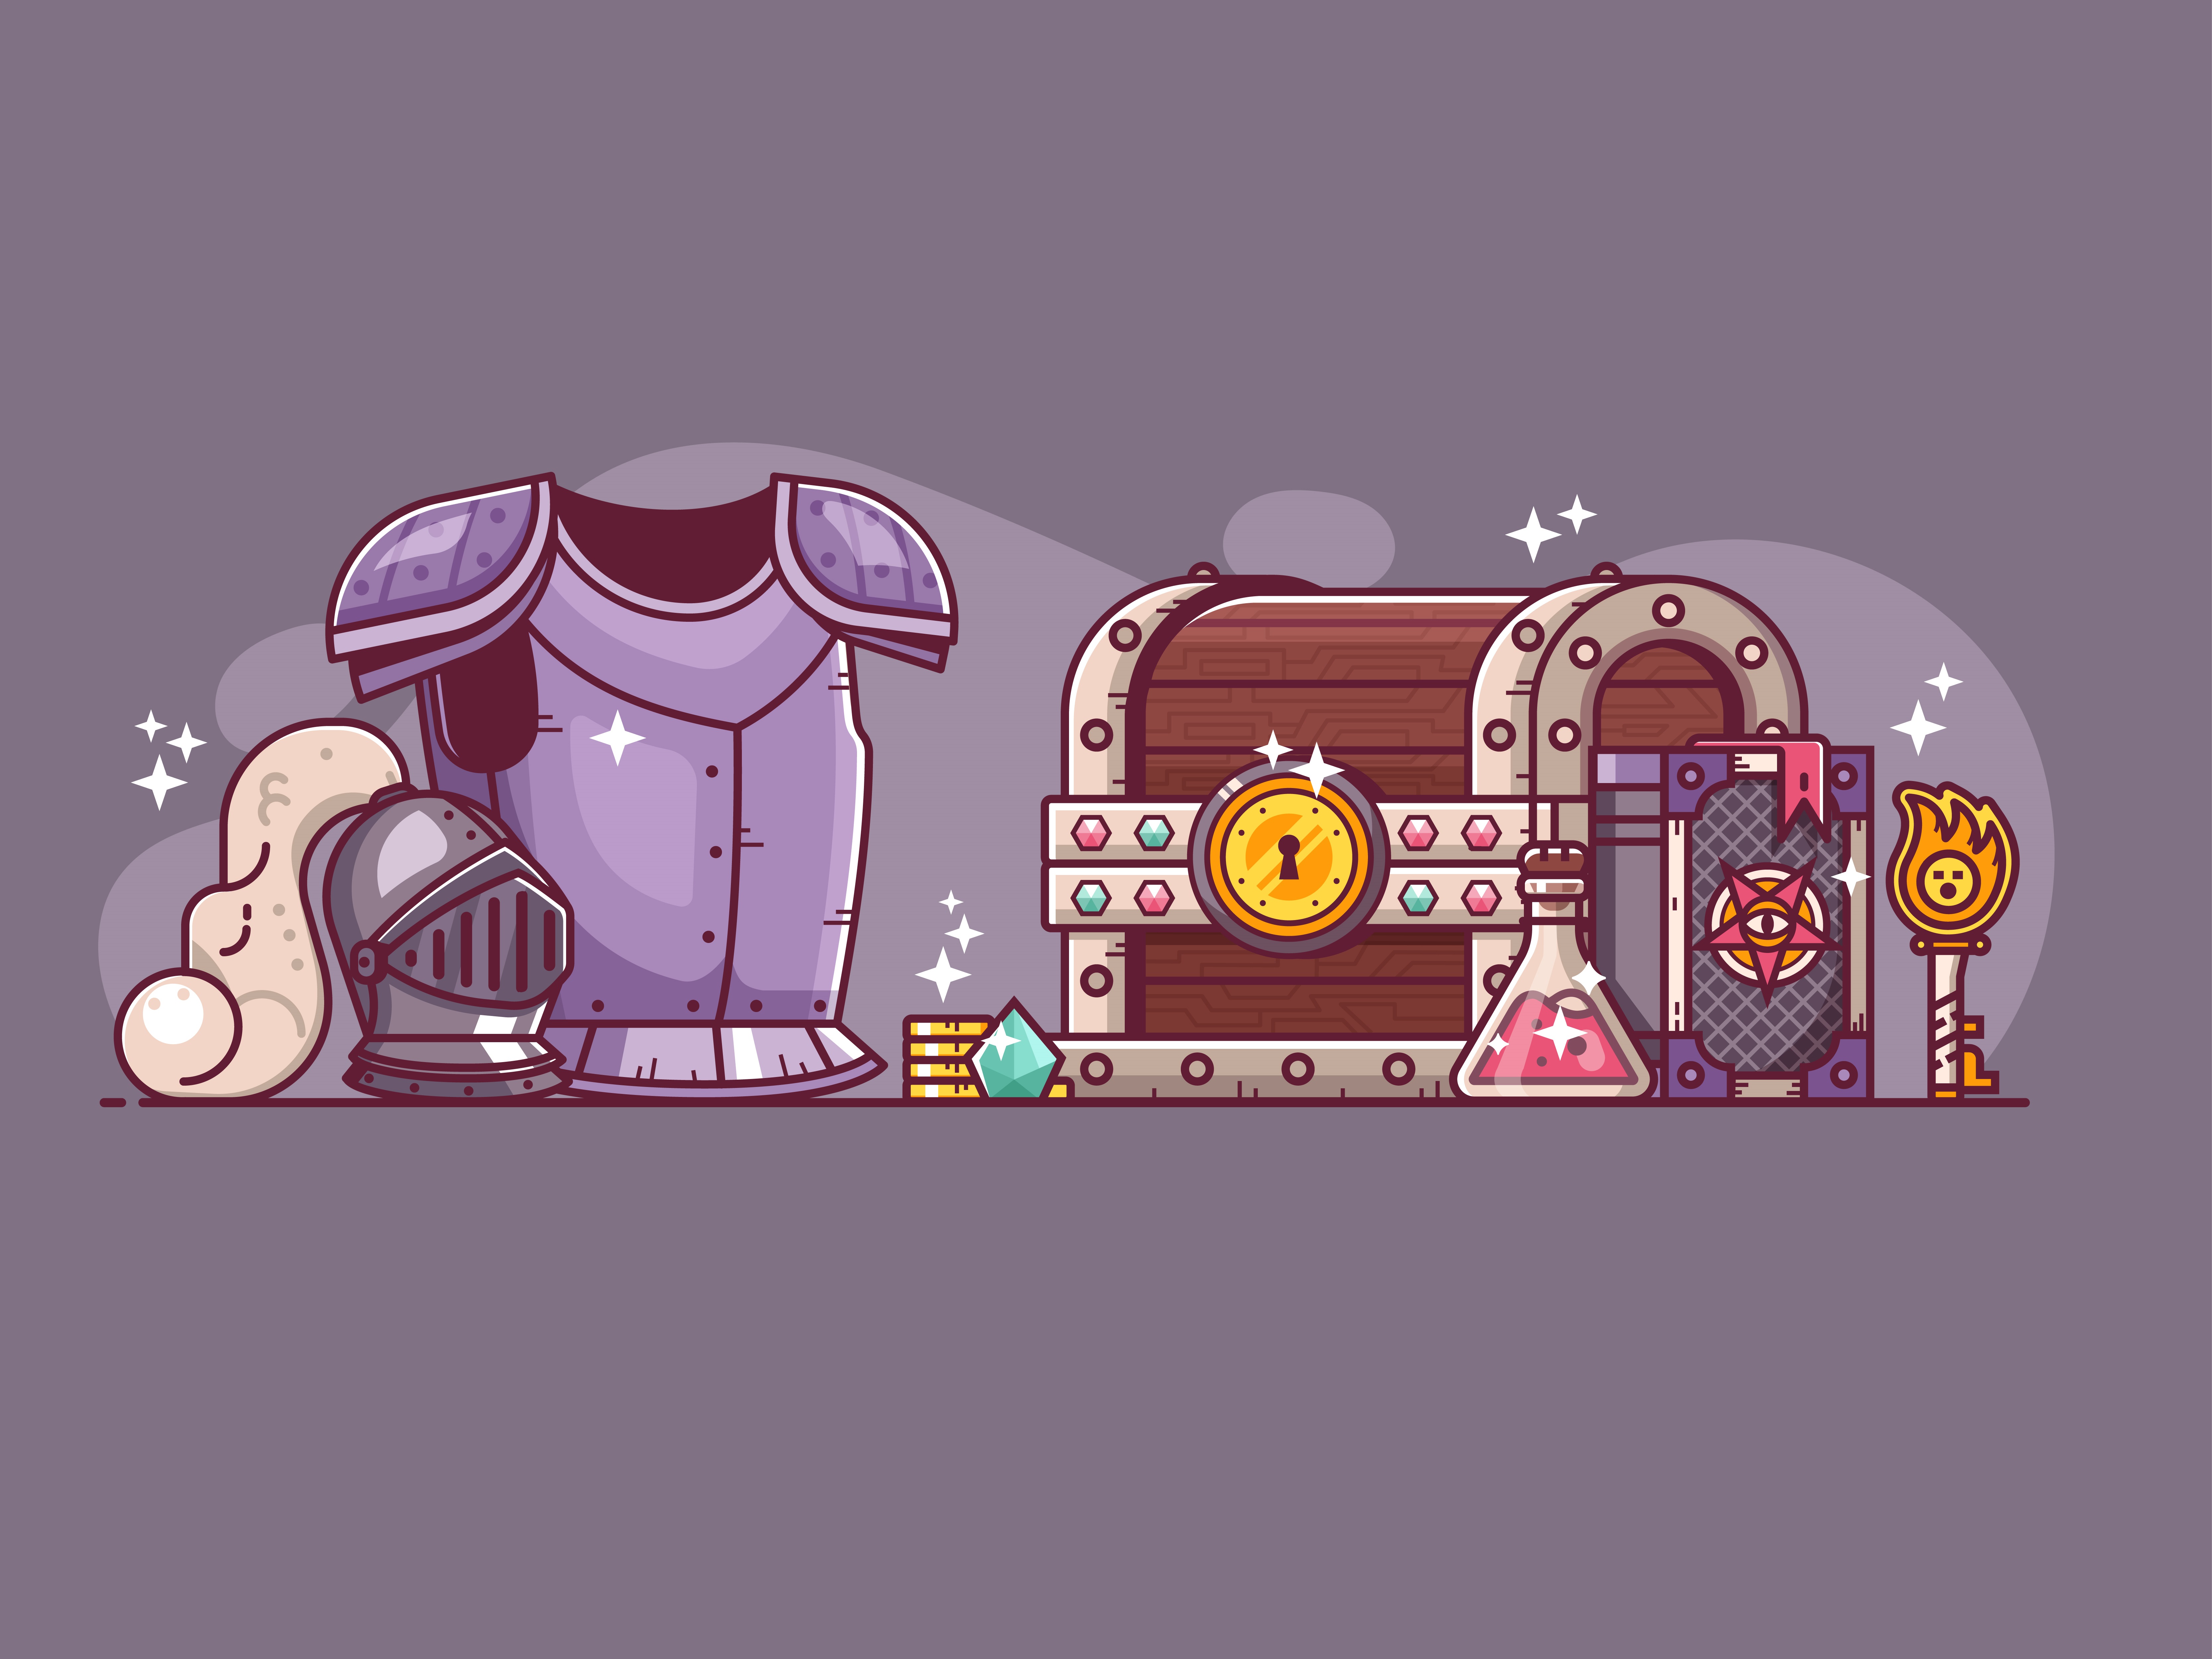 armor, treasure chest, spell bok, etc. RPG loot.